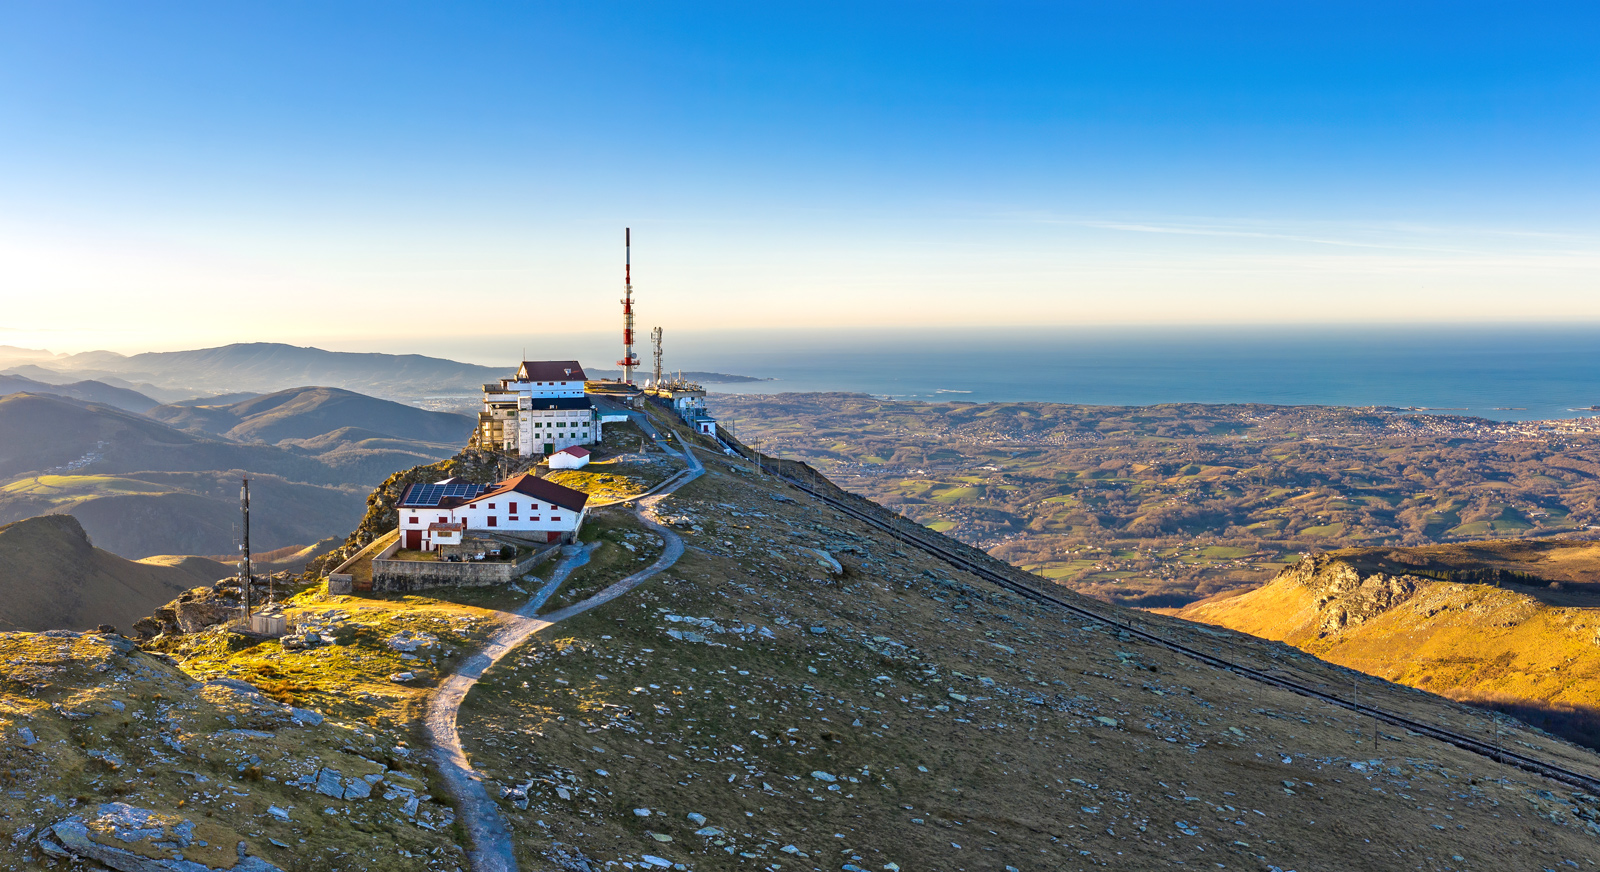 Turismo sostenible y responsable en el País Vasco